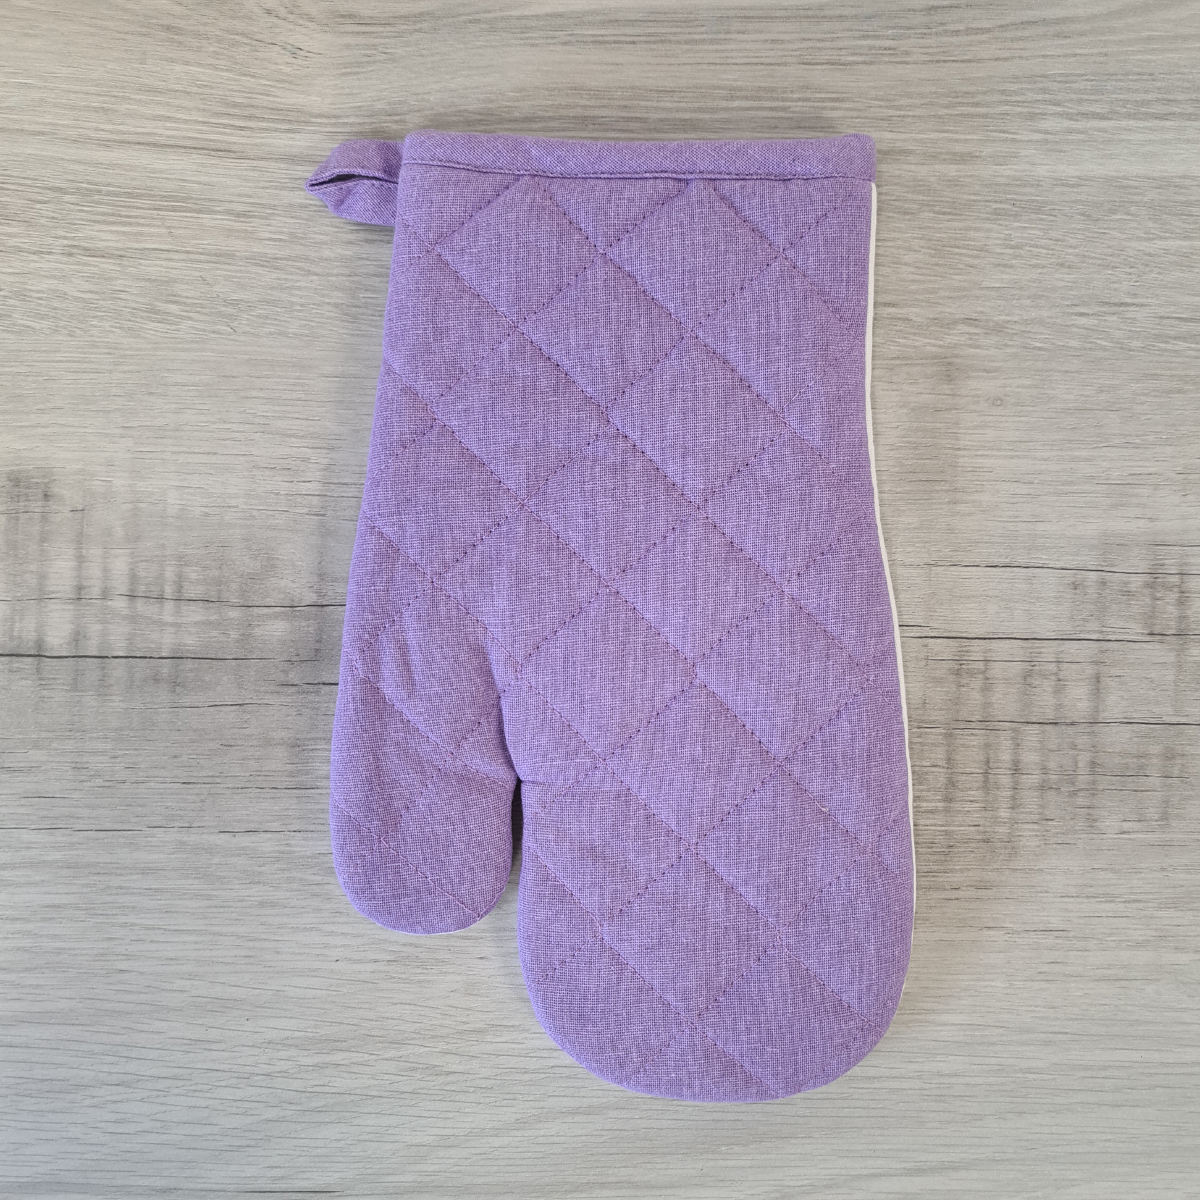 Lavender oven glove